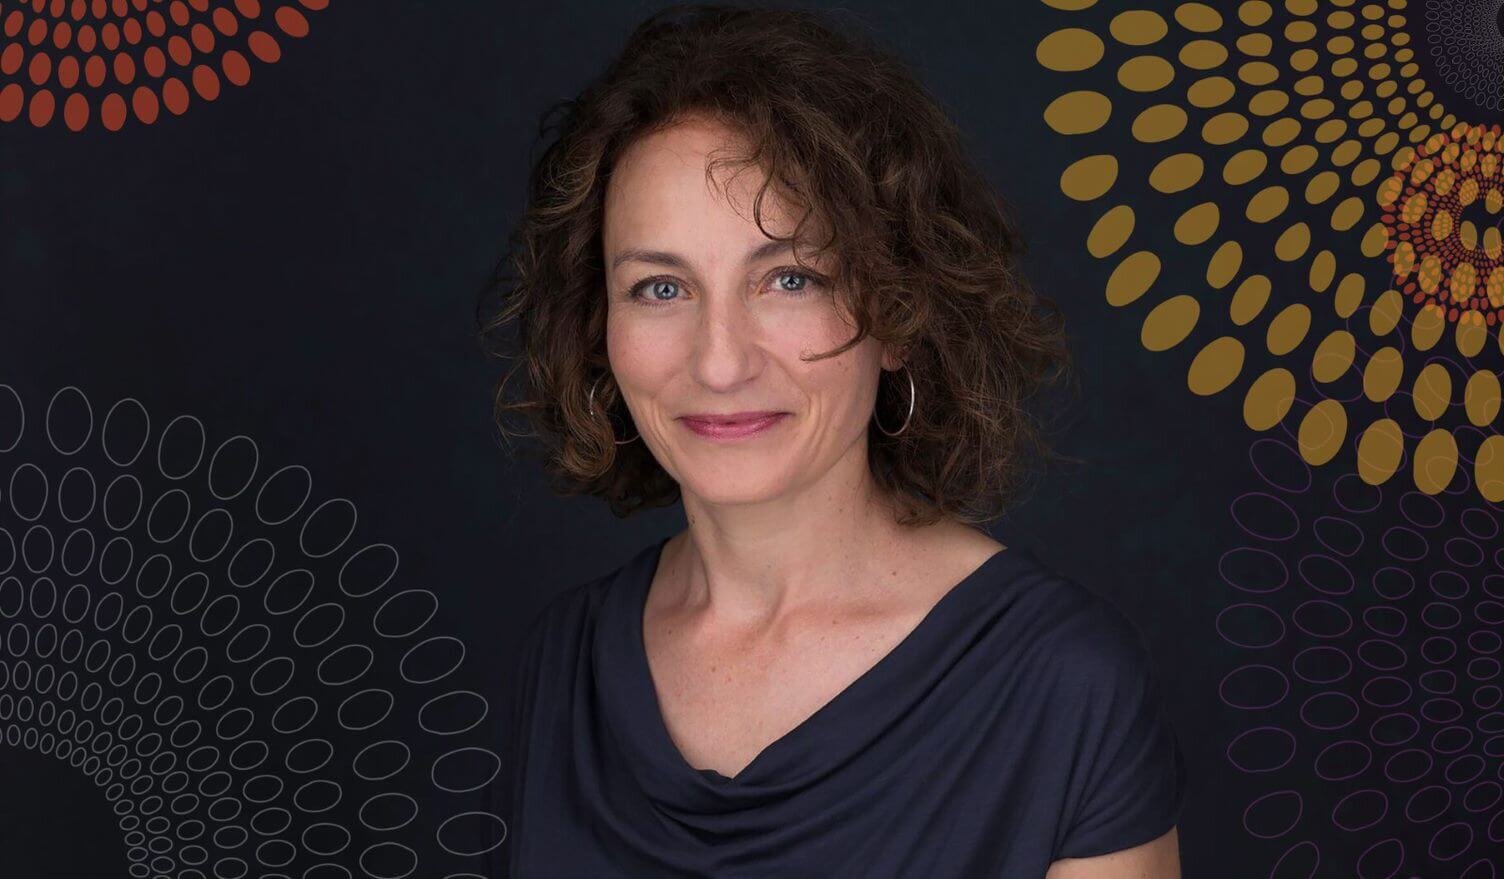 Lucy Lake, directora ejecutiva de CAMFED, Premio Yidan para el desarrollo de la educación 2020. (Foto: CAMFED).